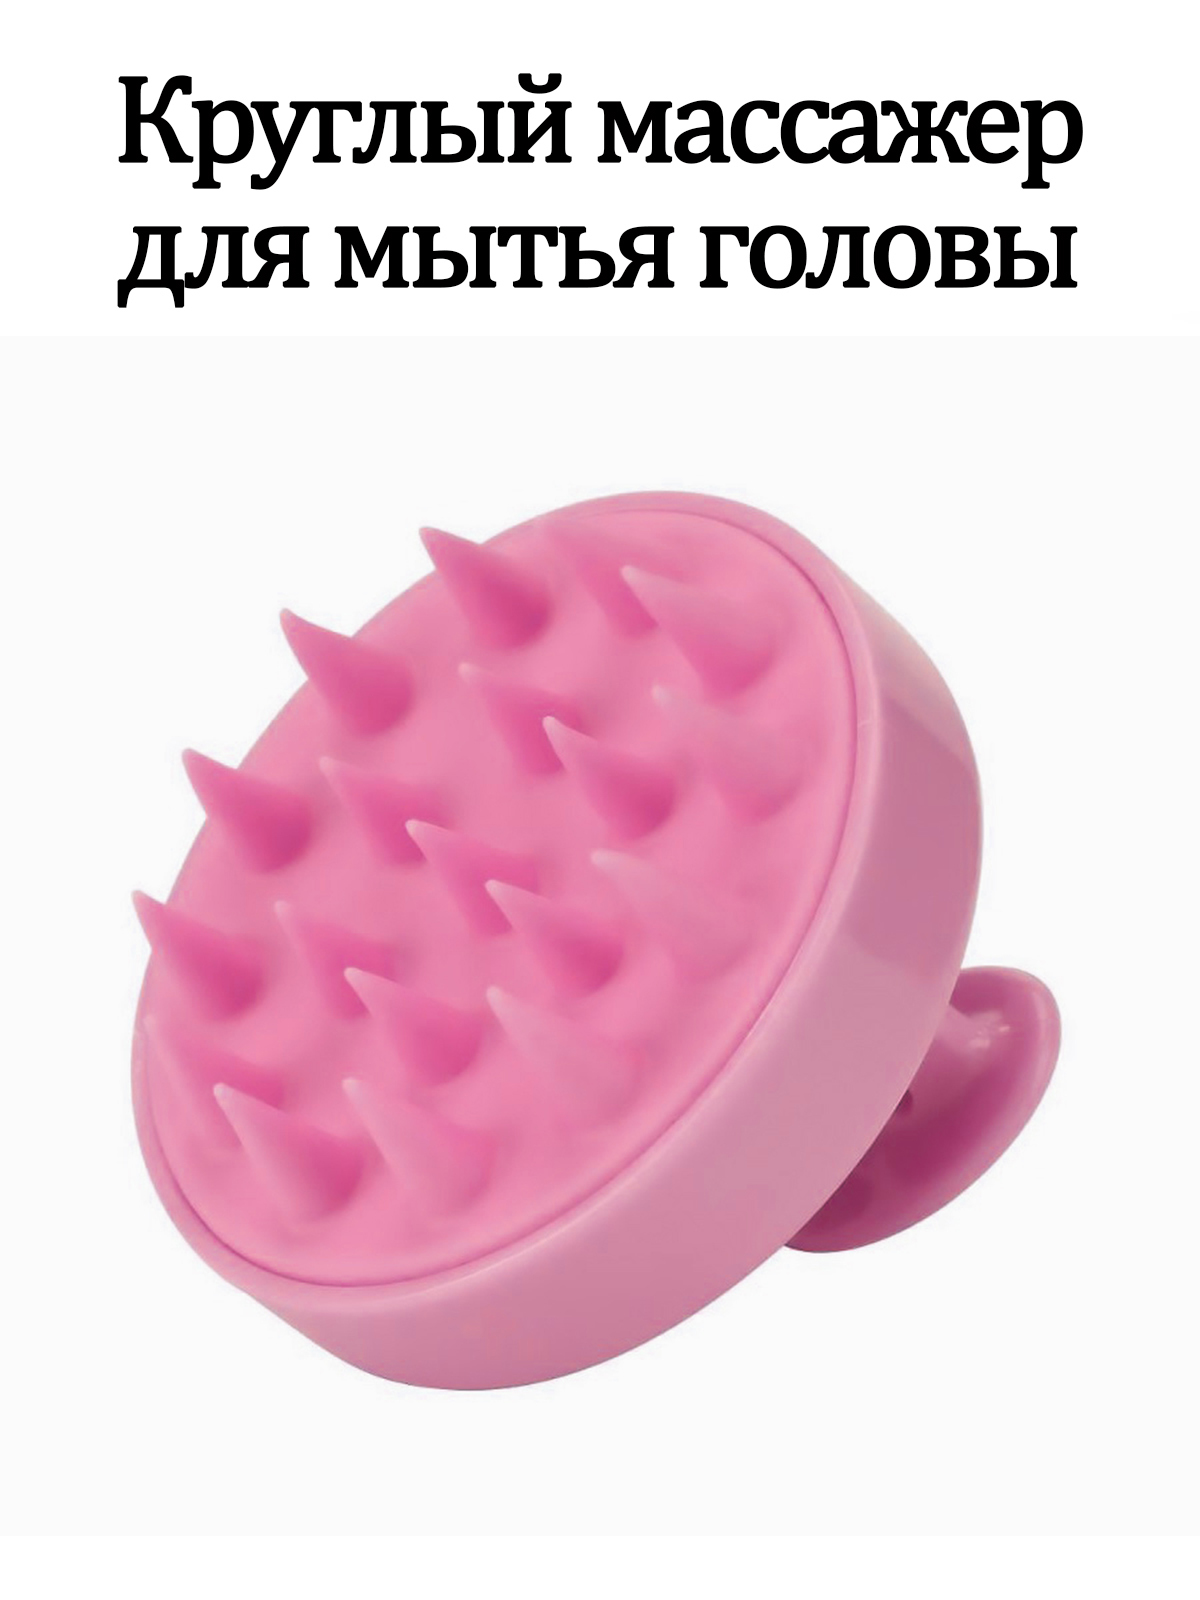 Круглая массажная. Массажная щетка для мытья головы. Массажер для мытья головы. Массажер для головы розовый. Массажер круглый.